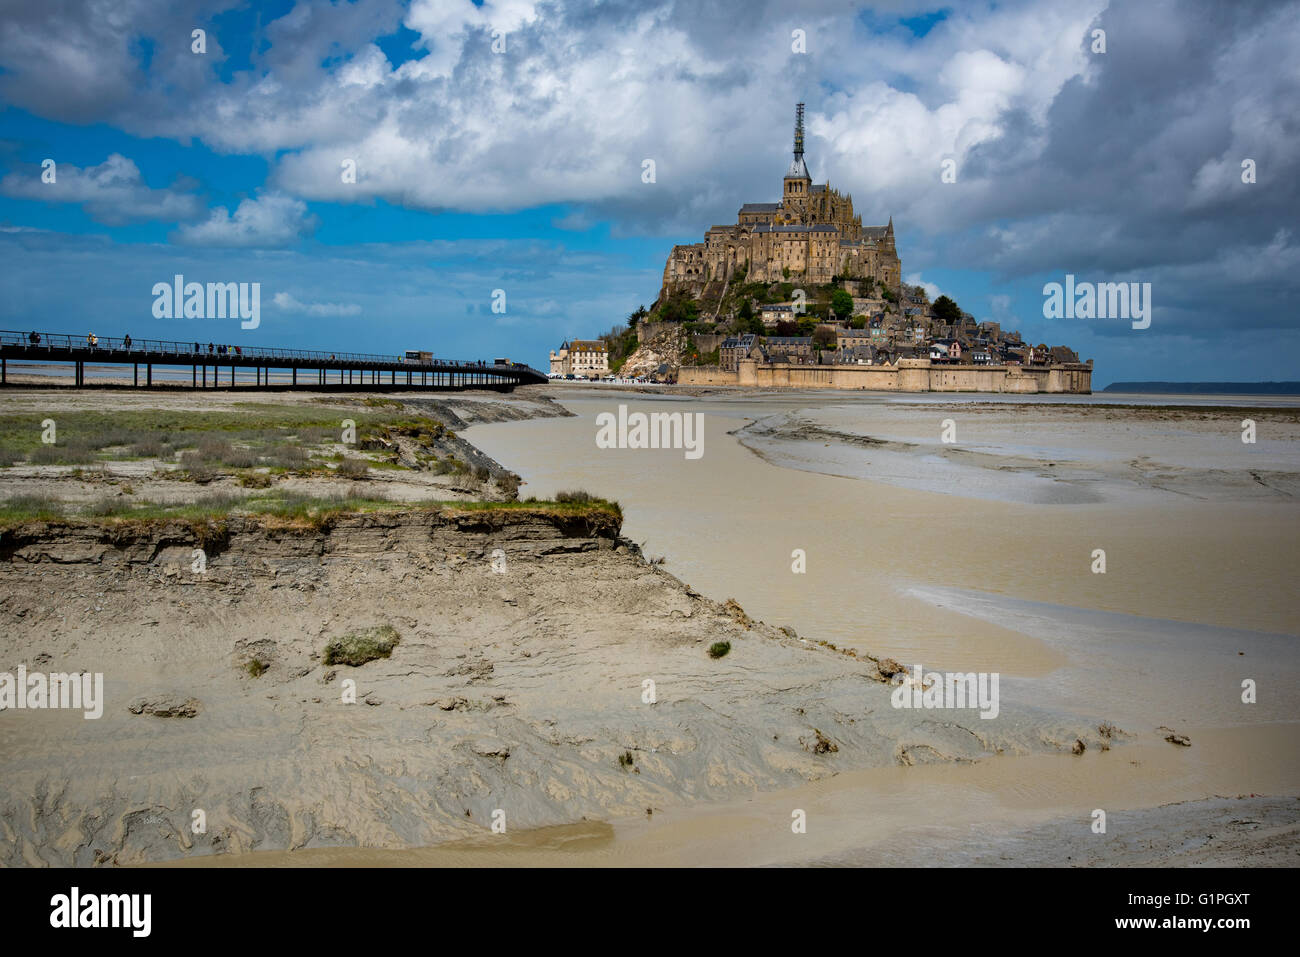 Mont Saint Michel, Normandy, France Stock Photo